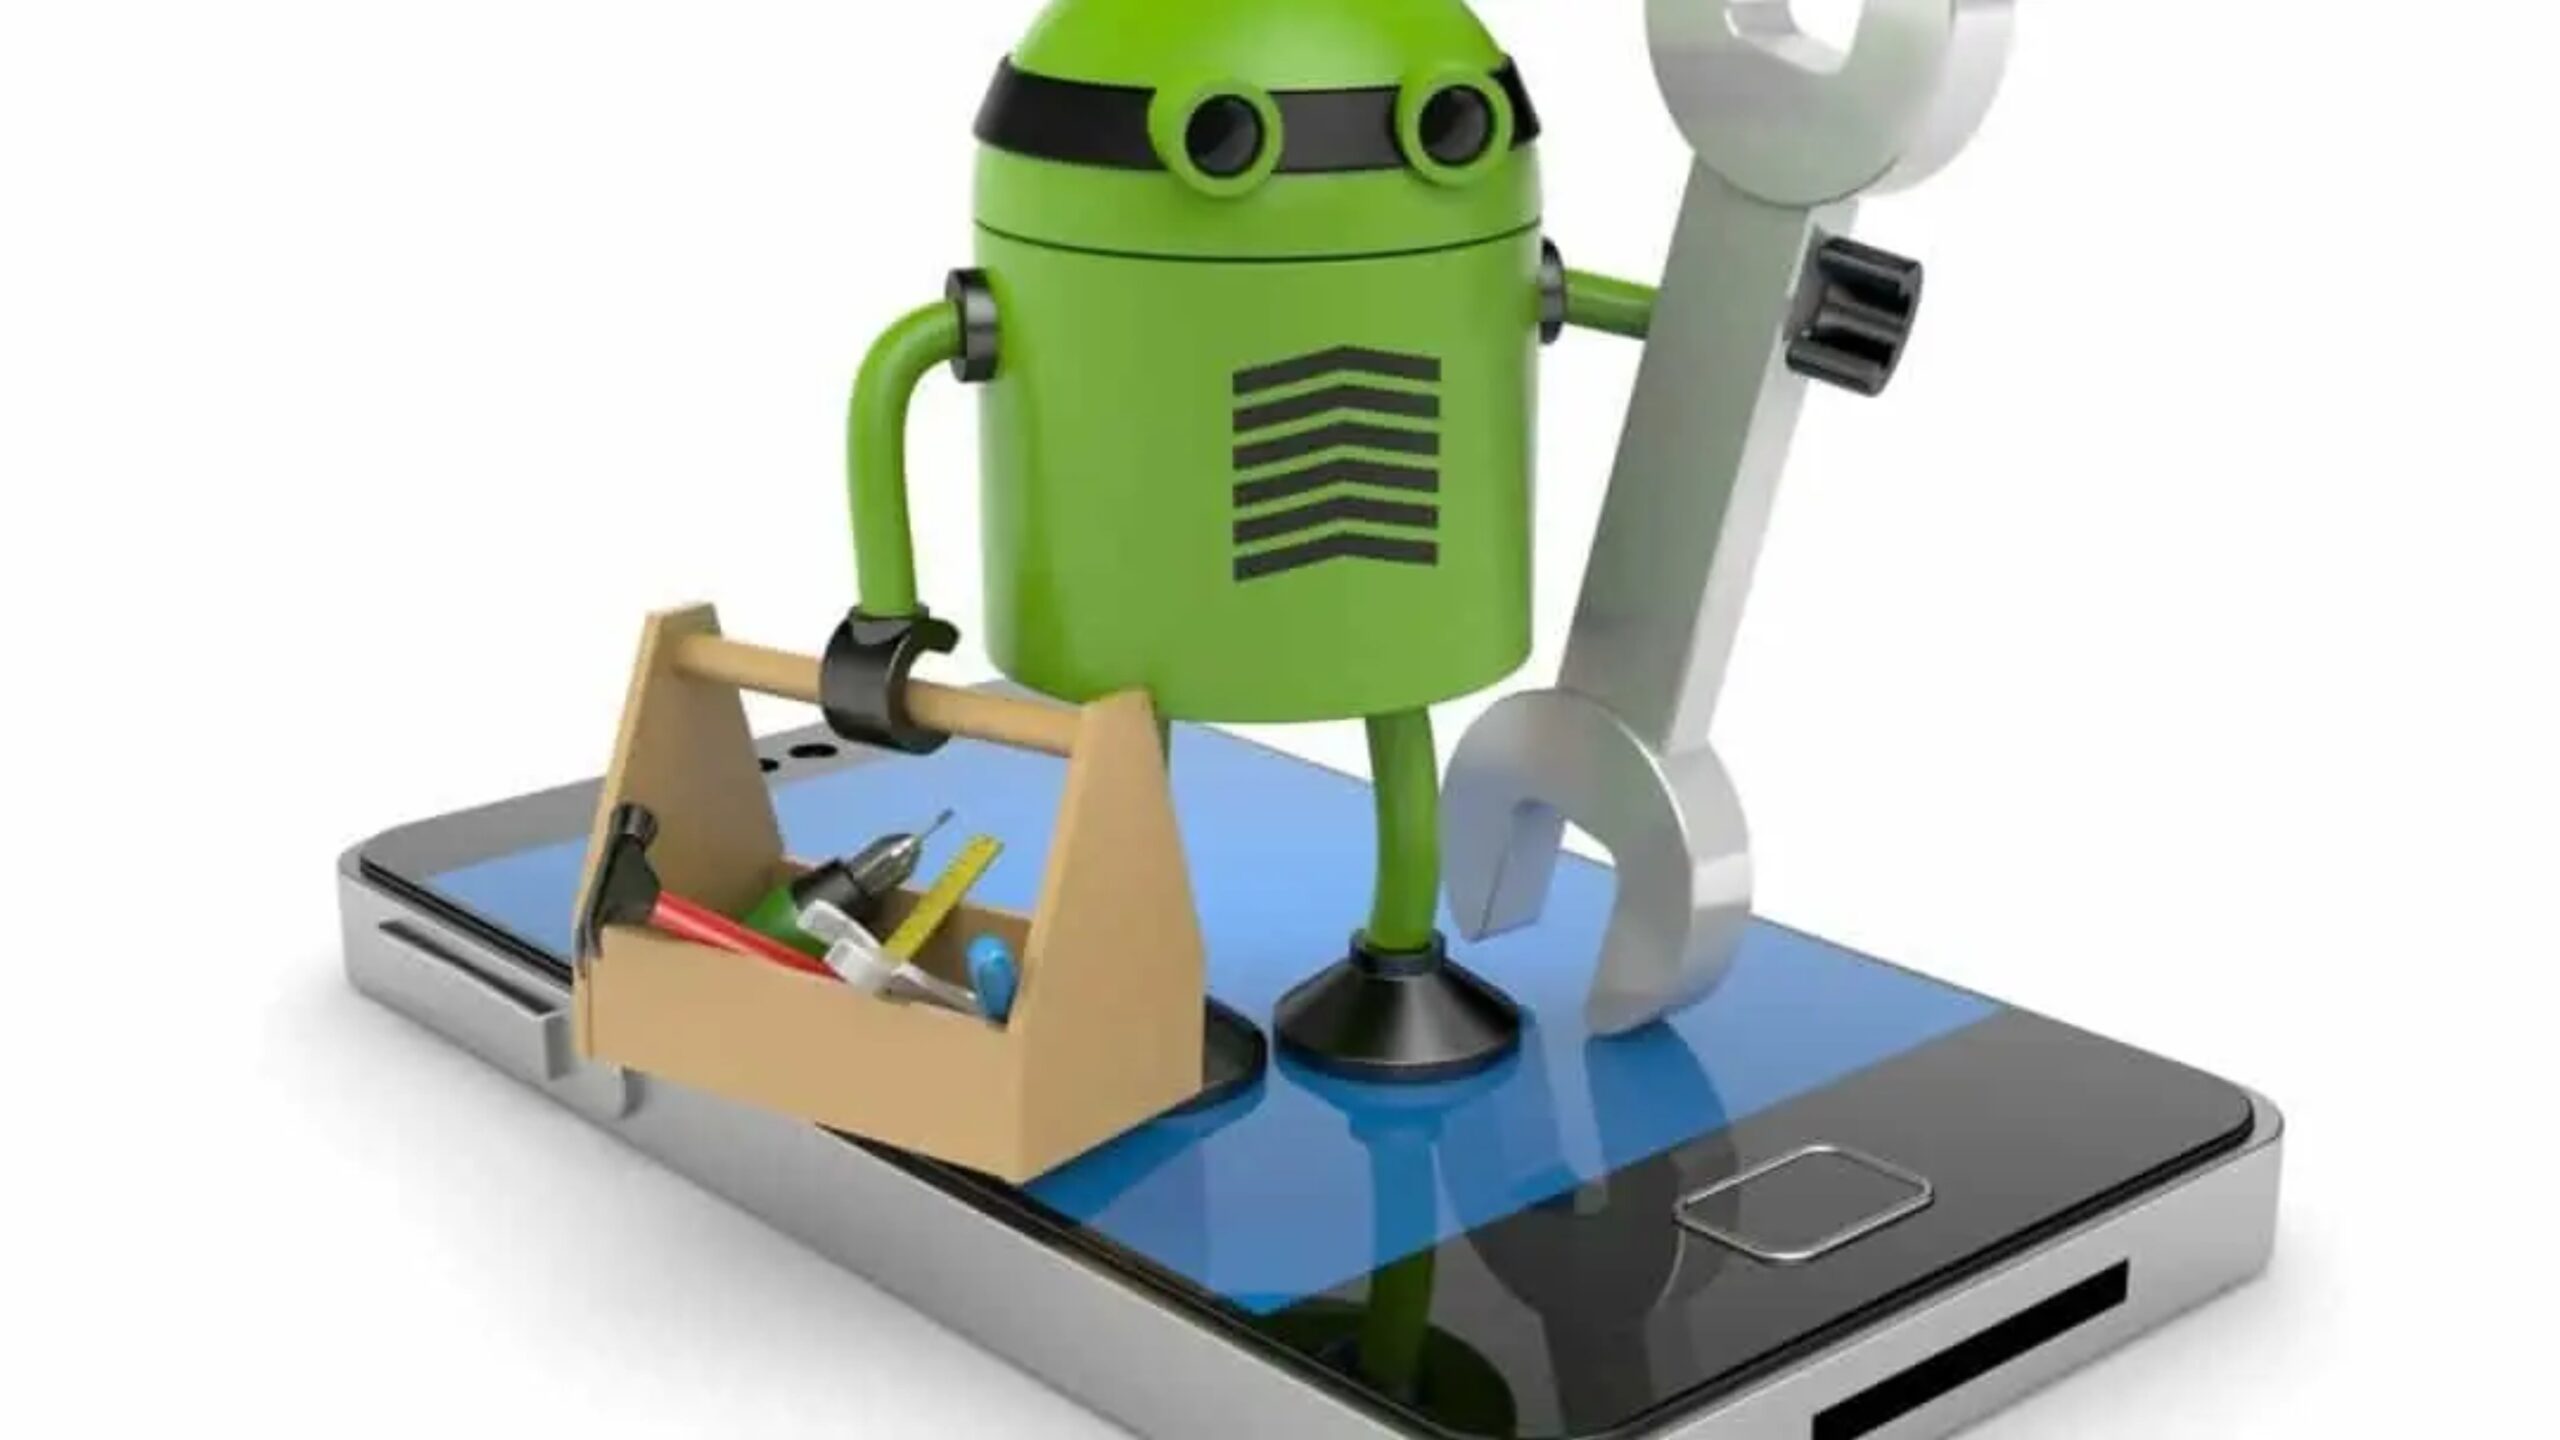 desenvolvedores-android-sao-recomendados-a-reduzirem-os-requisitos-de-hardware